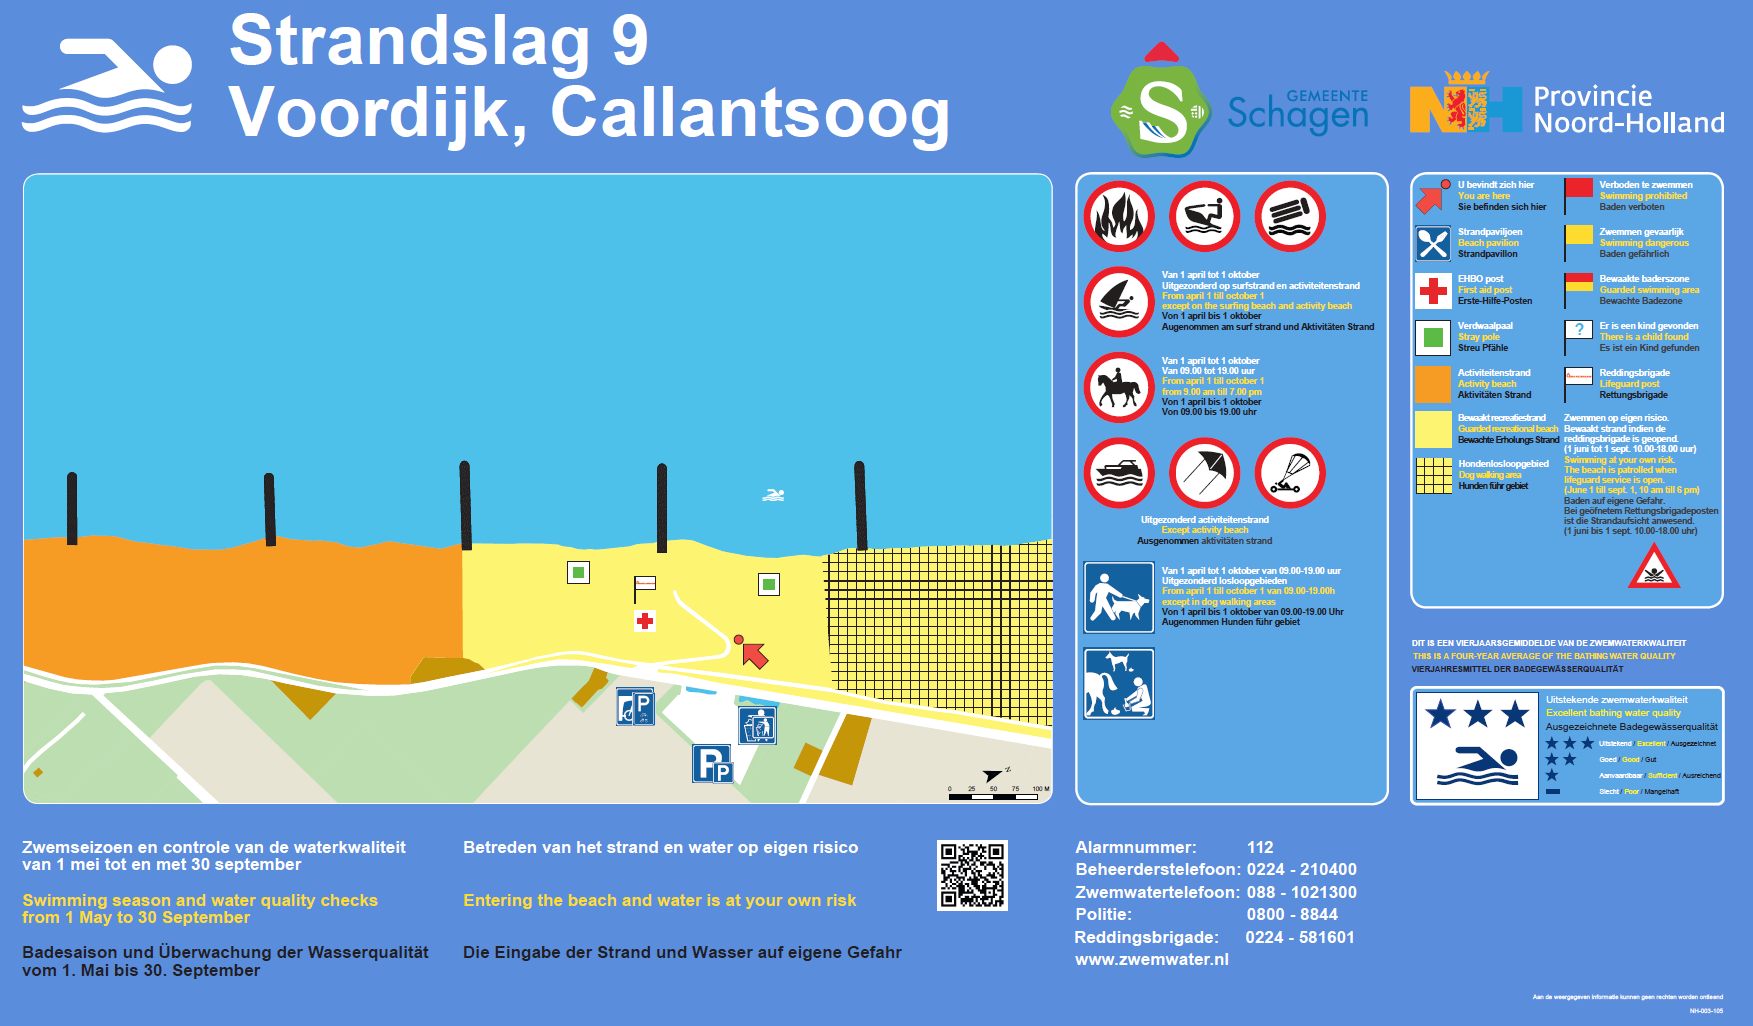 Het informatiebord bij zwemlocatie Callantsoog, Strandslag 9 Voordijk